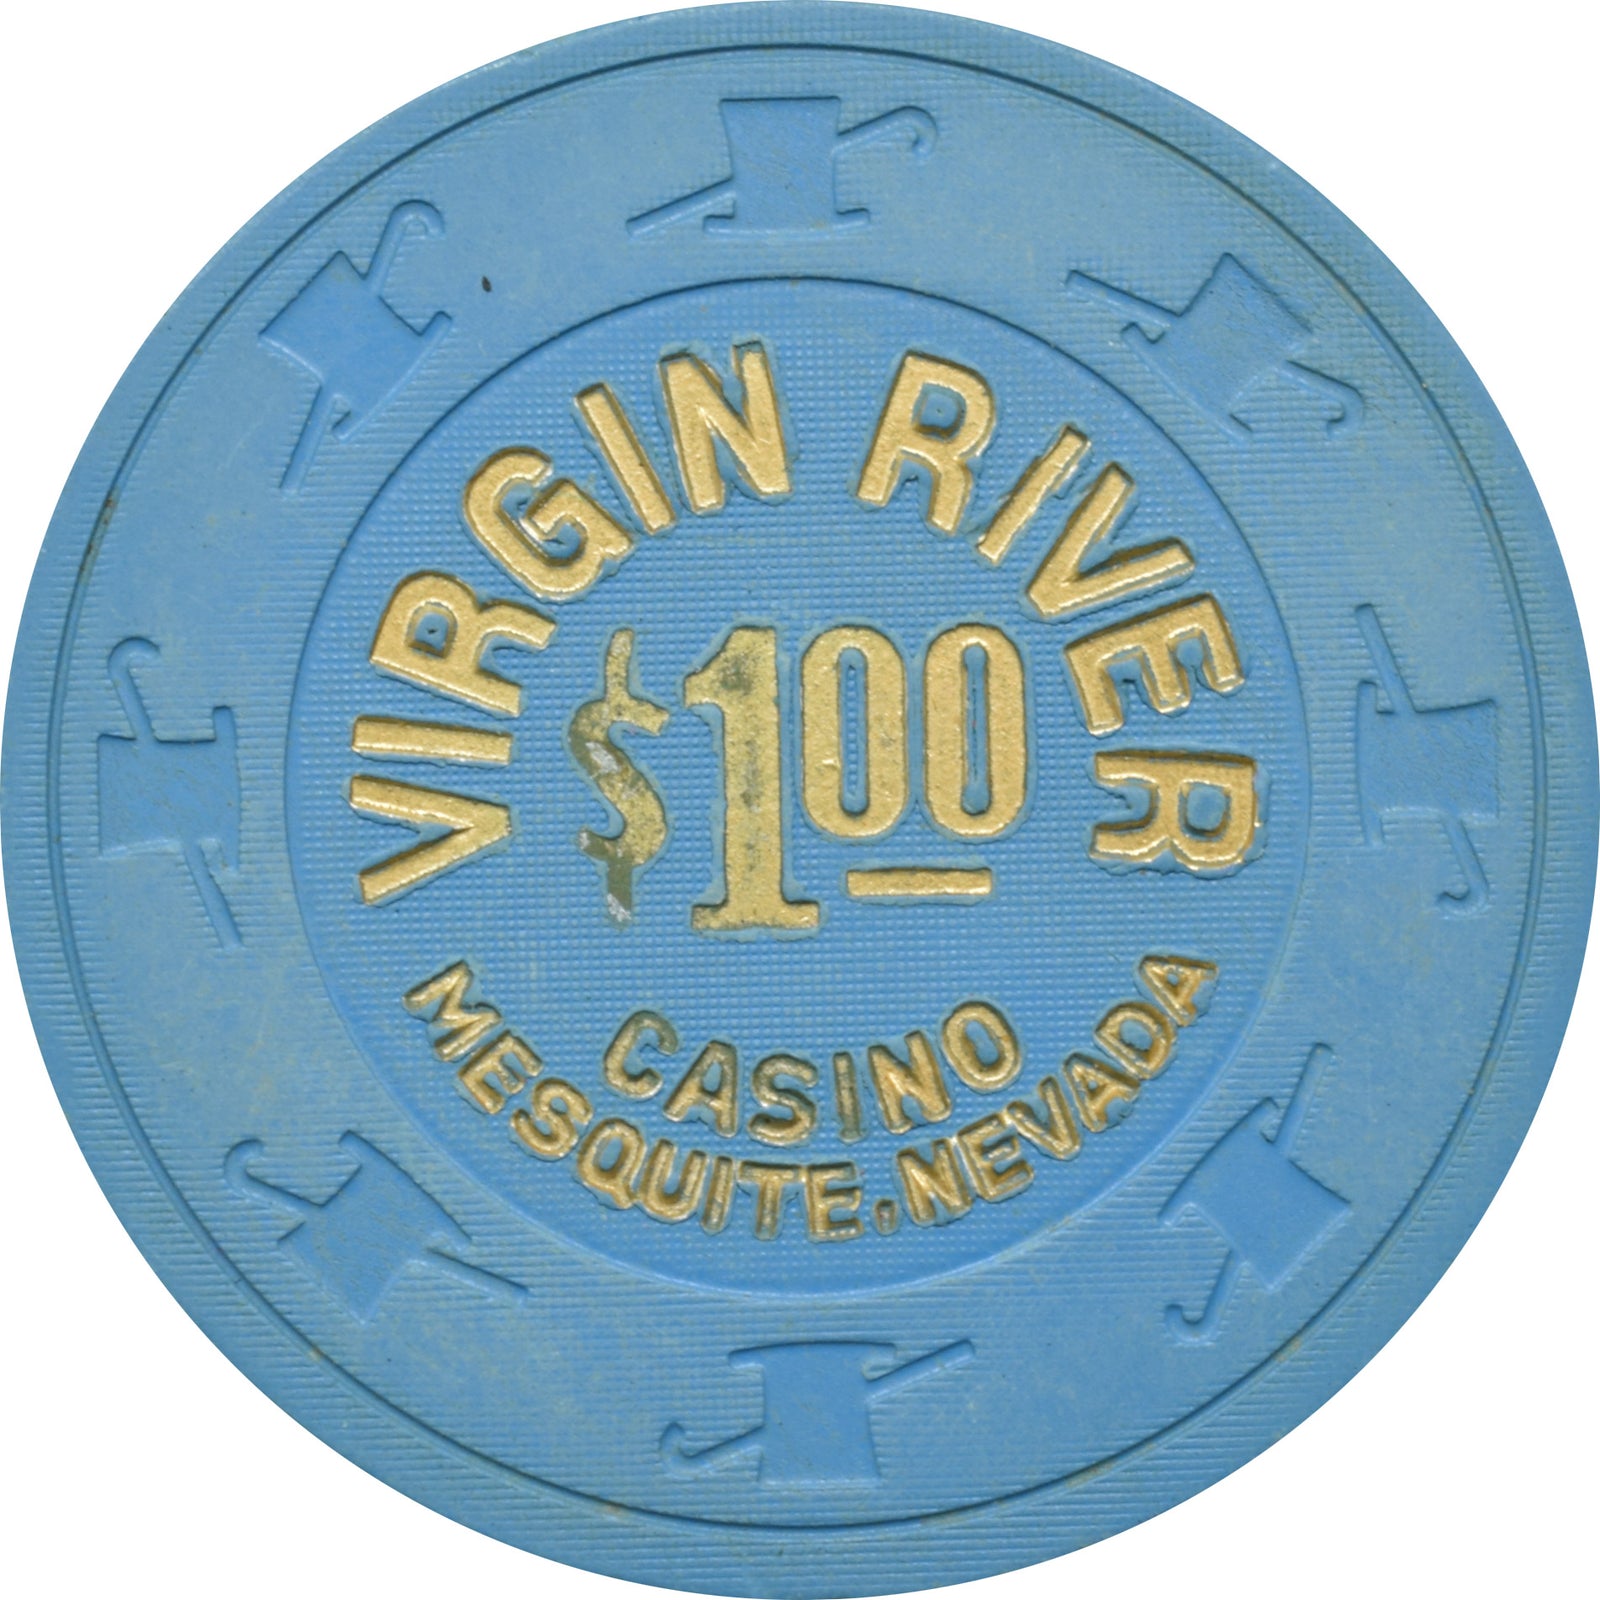 virgin river casino contact